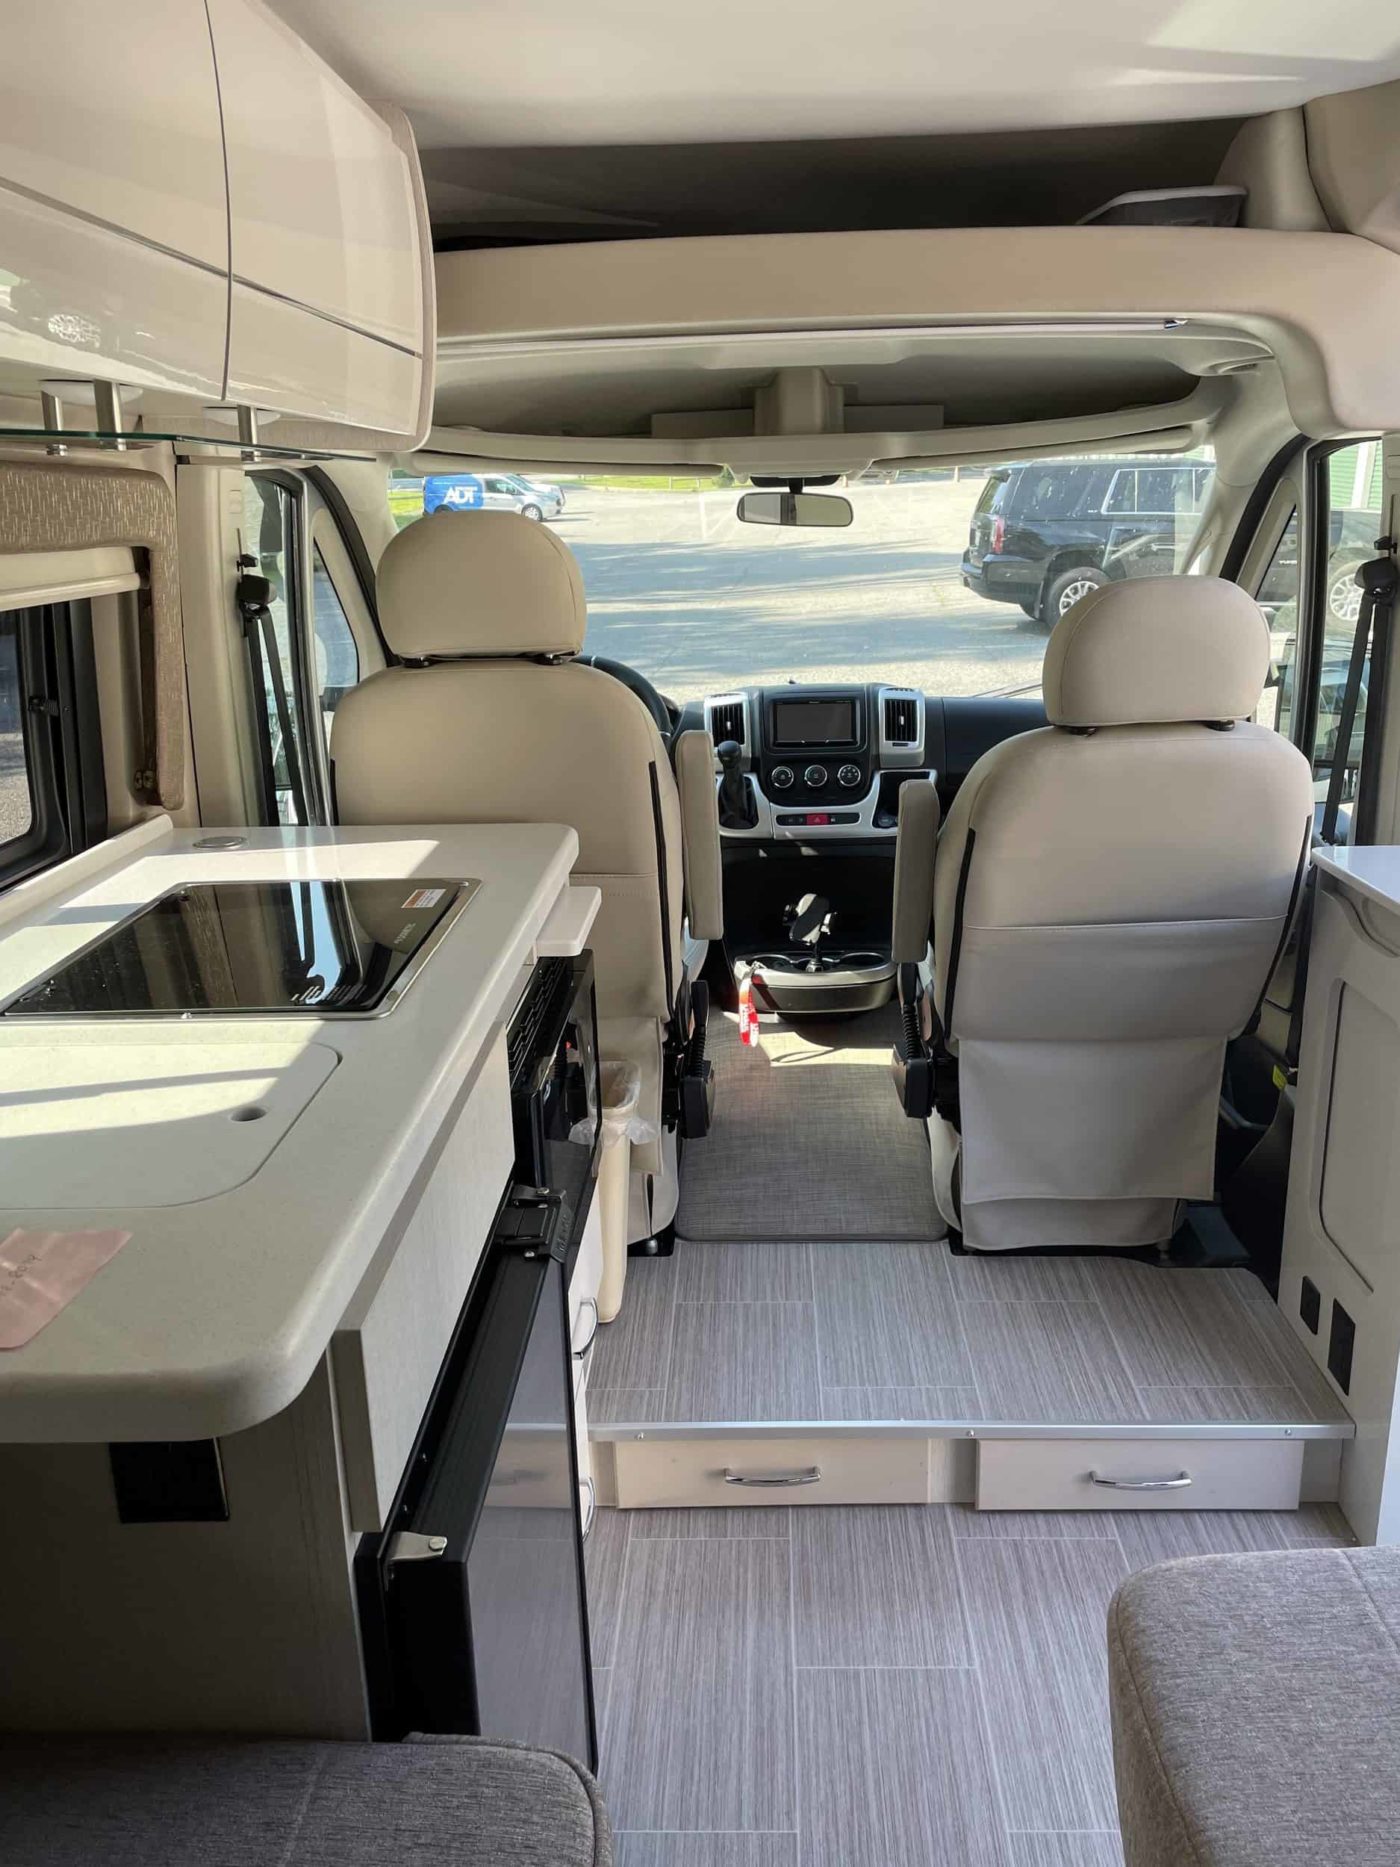 2022 Ram ProMaster Camper Van For Sale in Carmel, New York - Van Viewer